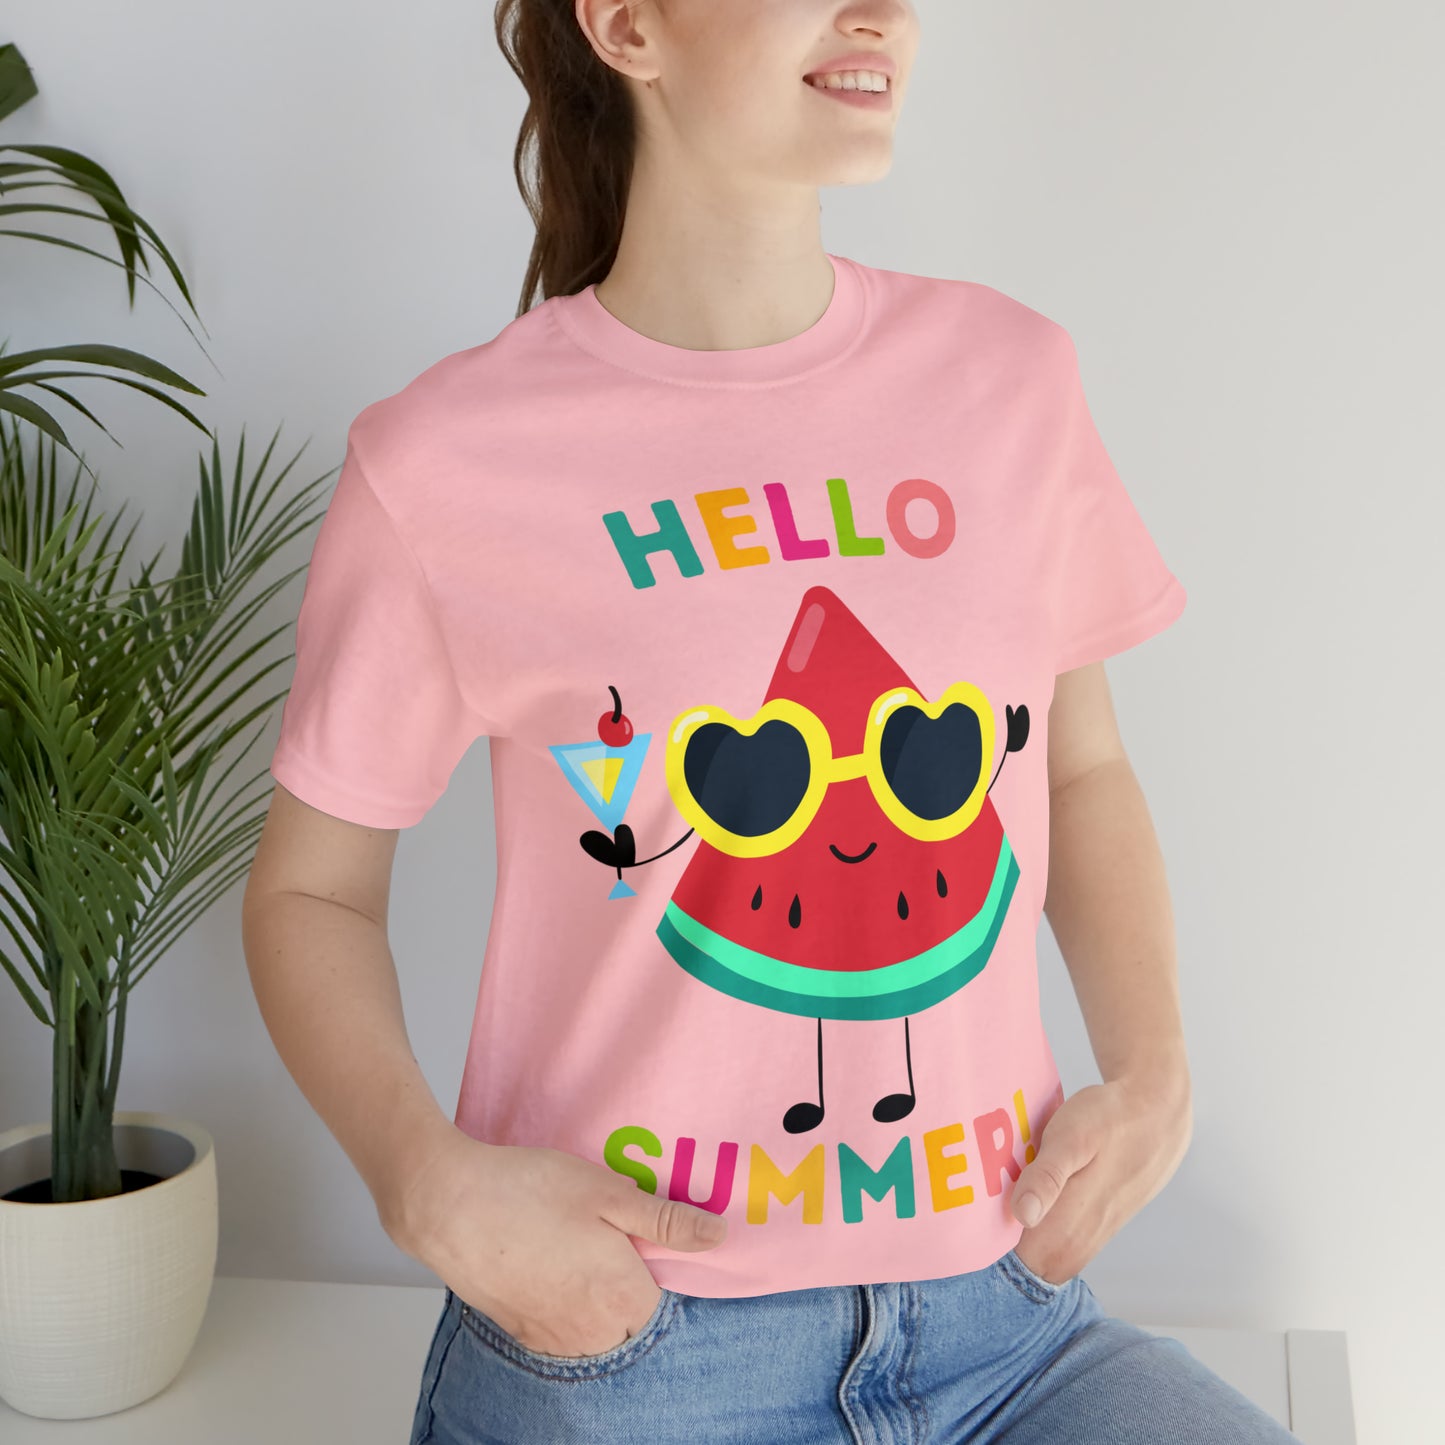 Hello Summer Shirt, Funny Summer Casual Top Tee,Unisex Summer Tshirt Ladies